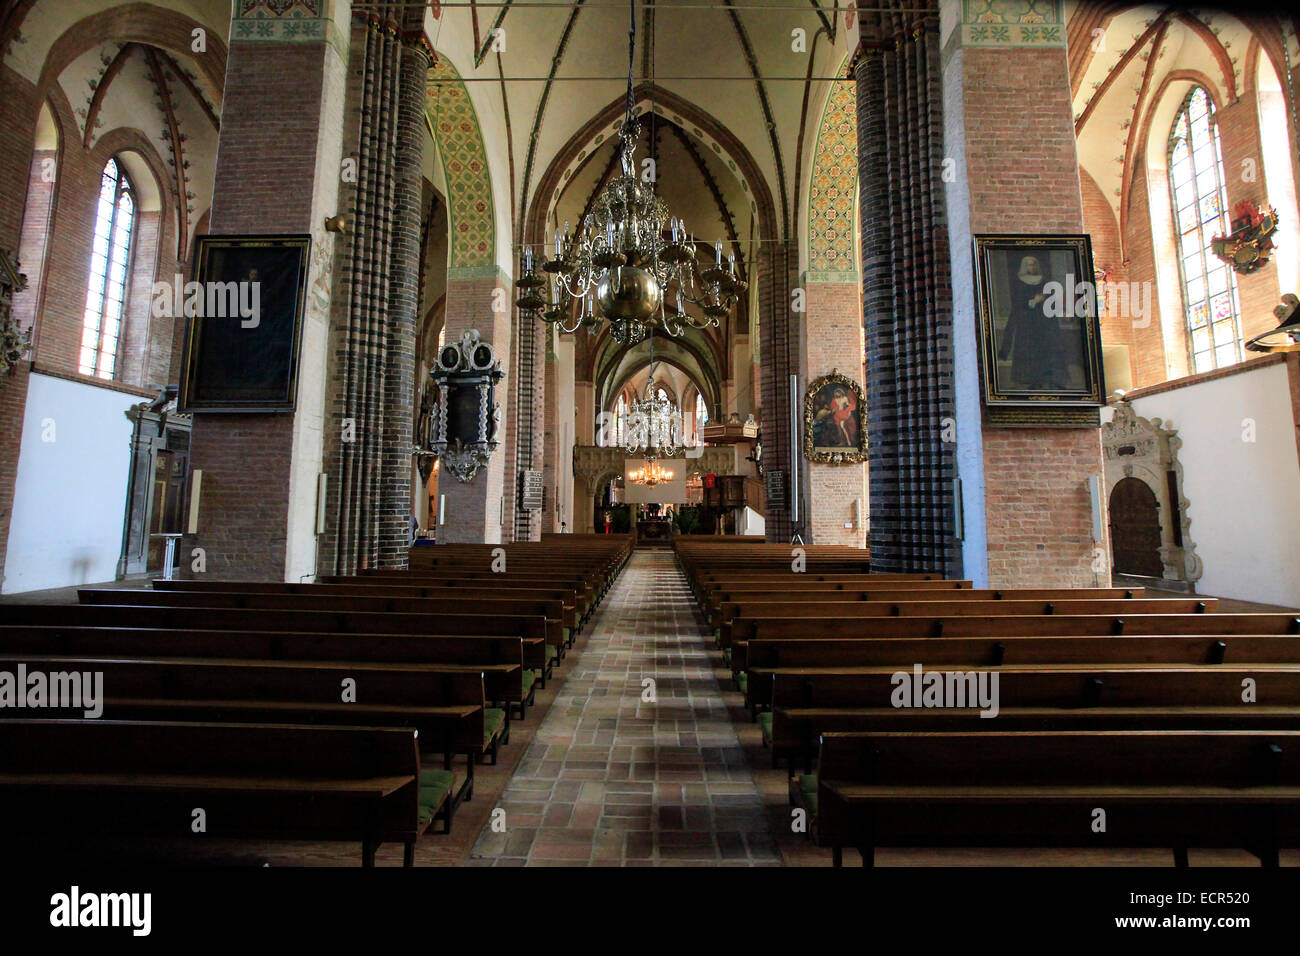 Vue de l'intérieur de la Cathédrale Saint Pierre à Schleswig. C'est l'un des monuments les plus importants de Schleswig-Holstein. Il s'agit d'une prédication de l'église. Photo : Klaus Nowottnick Date : 27 mai 2012 Banque D'Images